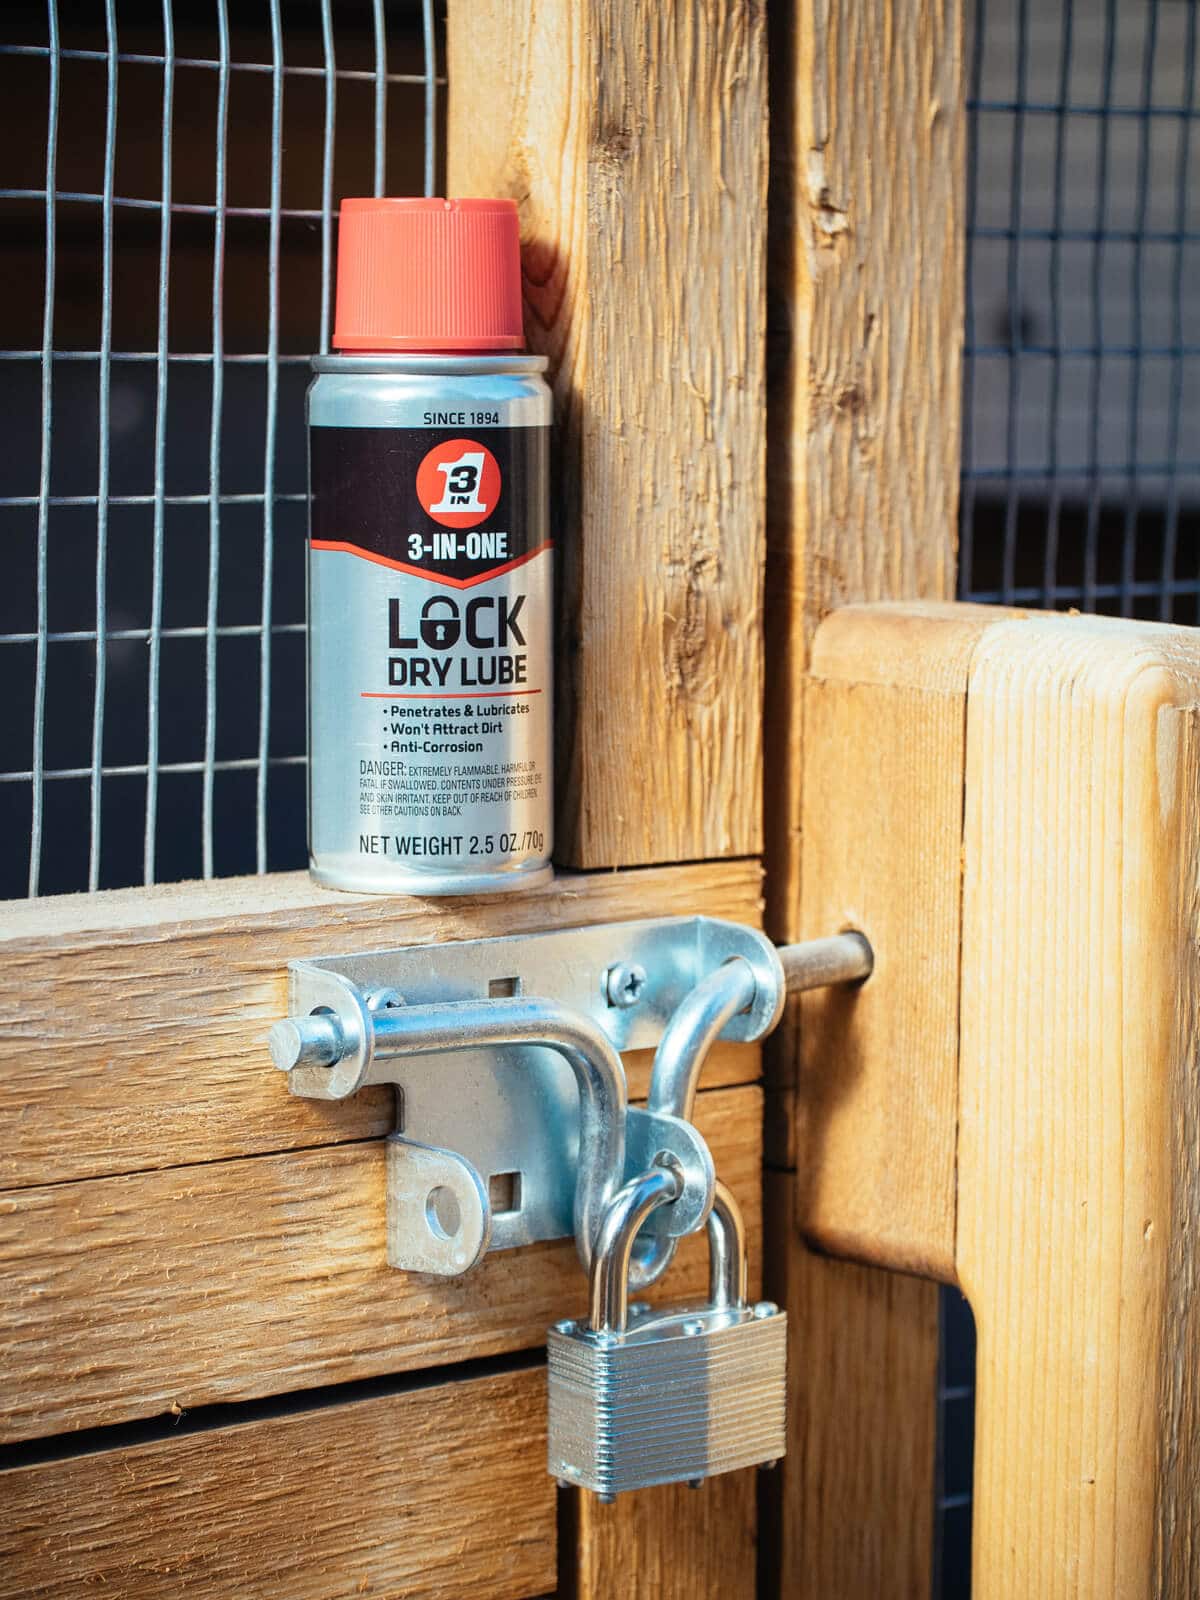 3-IN-ONE Lock Dry Lube helps loosen stuck locks